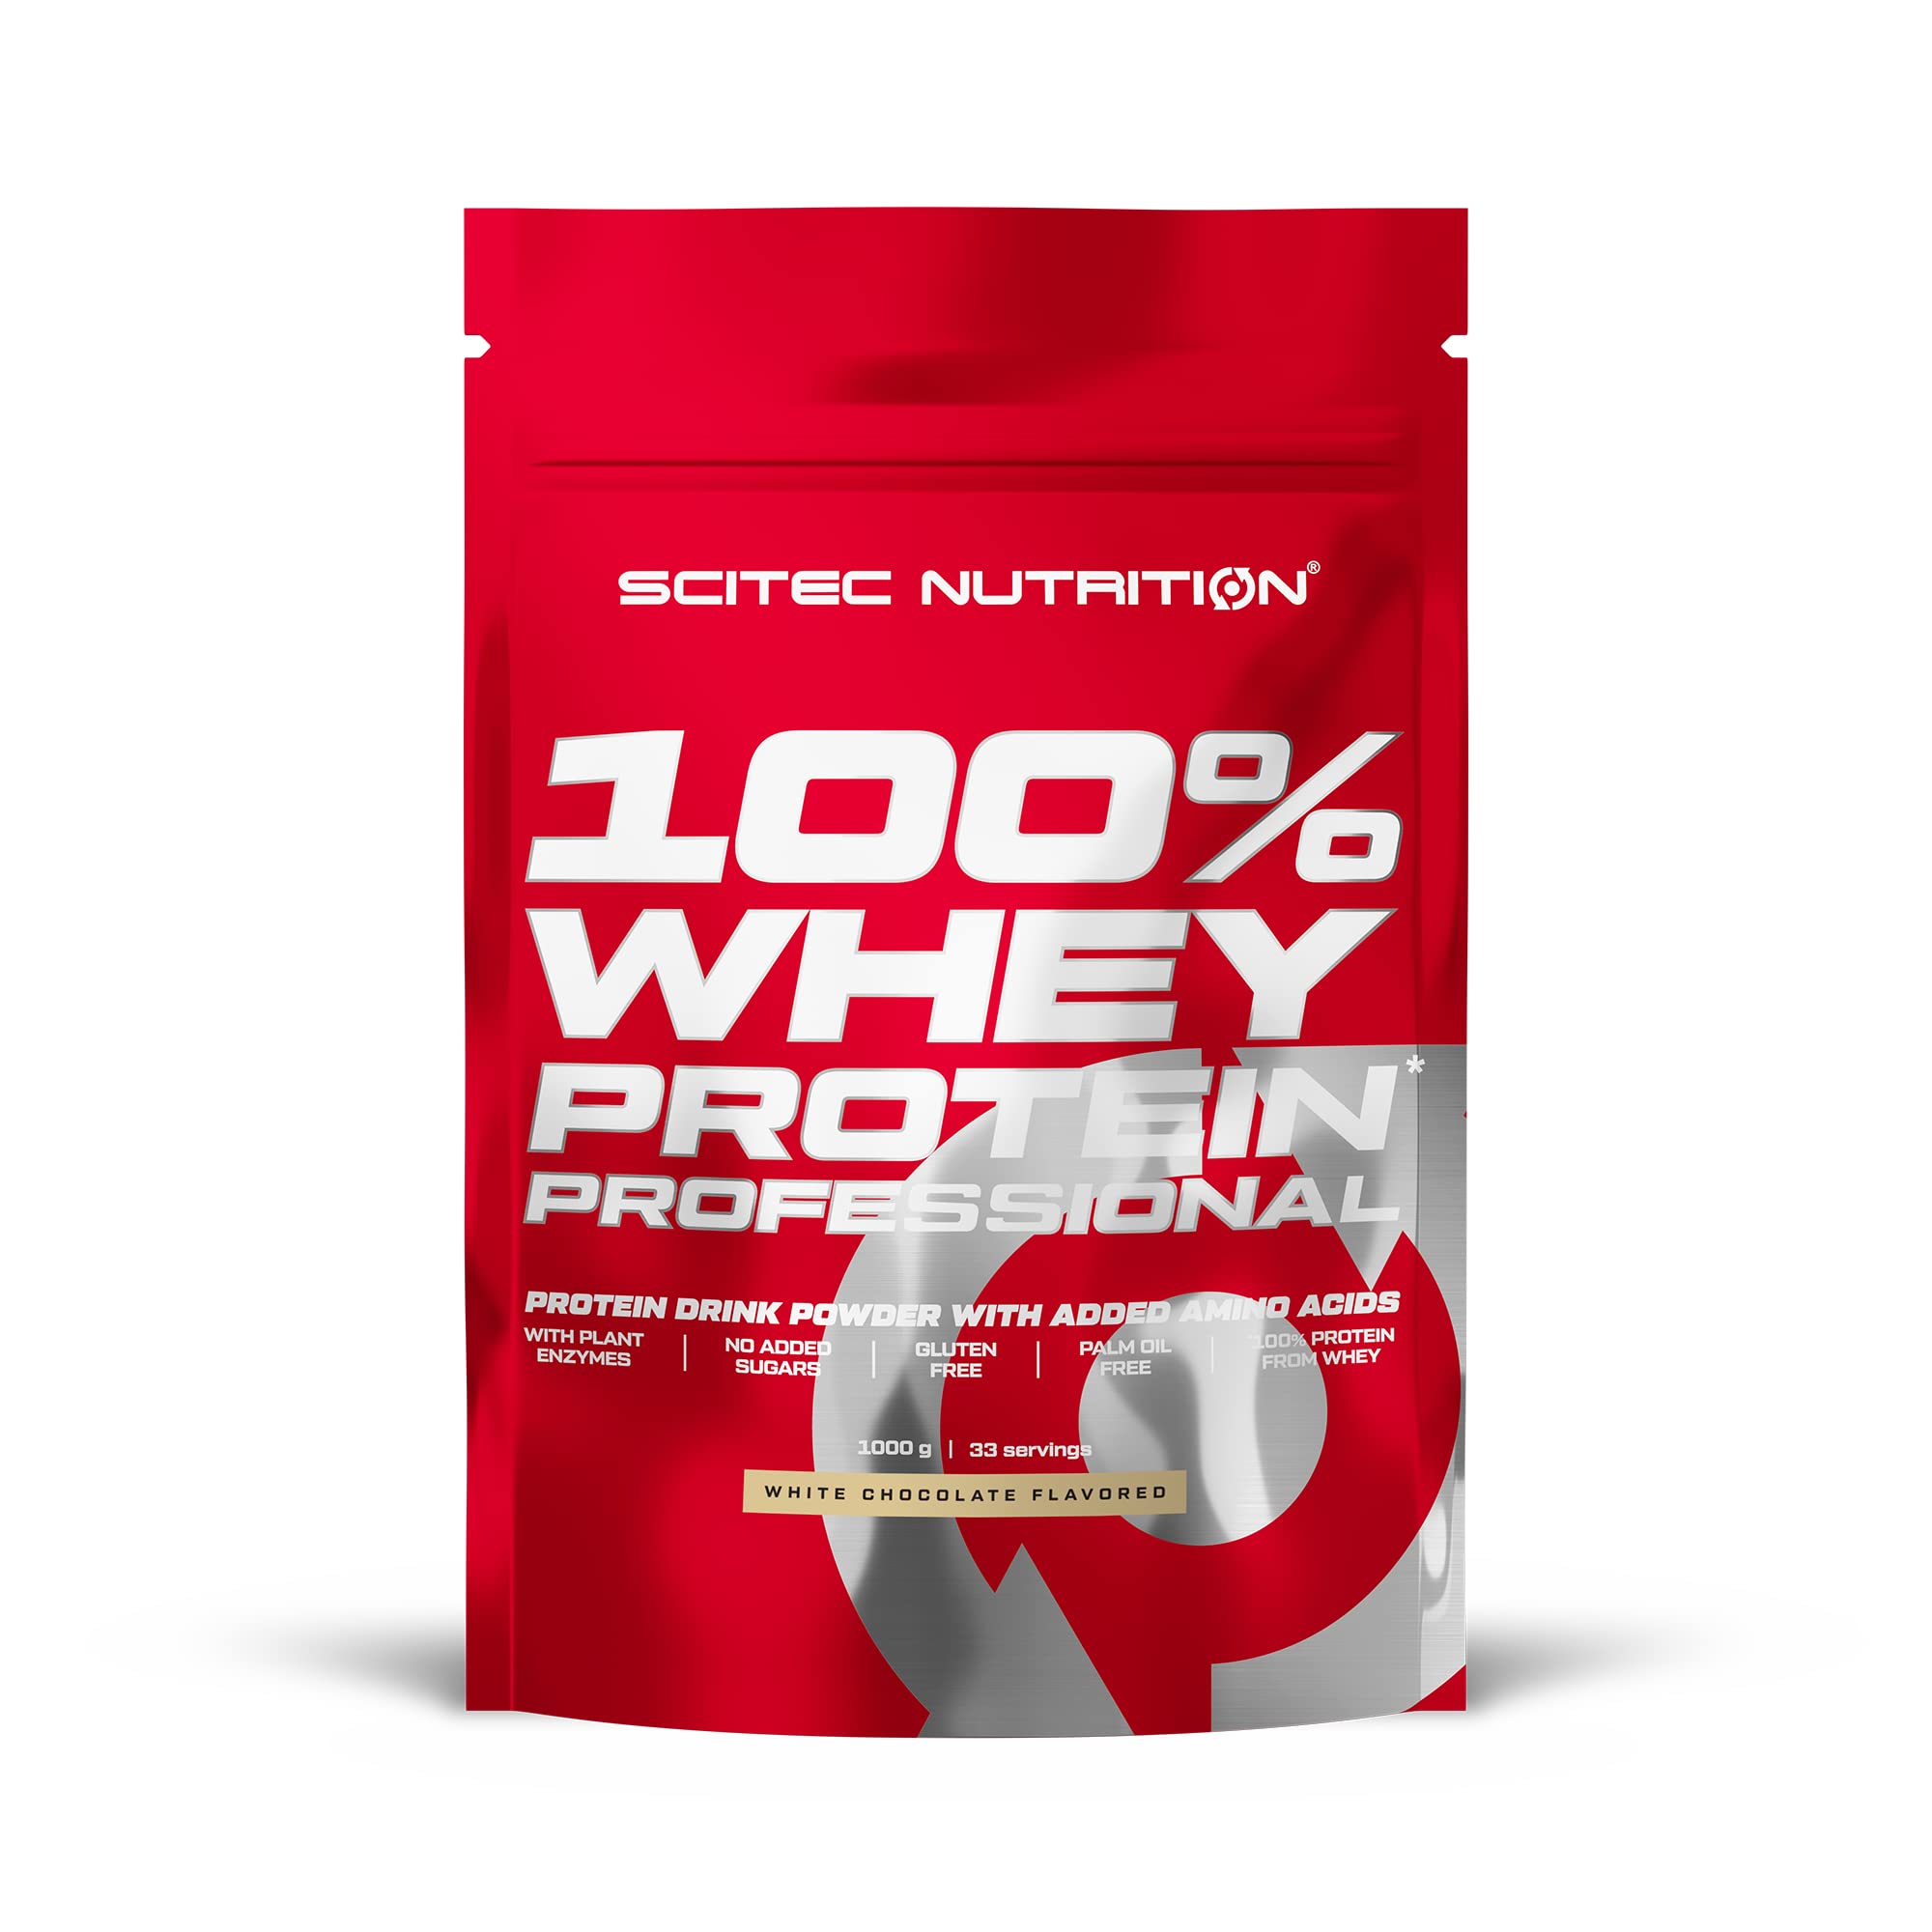 Scitec Nutrition 100% Whey Protein Professional - Angereichert mit zusätzlichen Aminosäuren und Verdauungsenzymen - Glutenfrei - Palmölfrei, 1000 g, weißeSchokolade